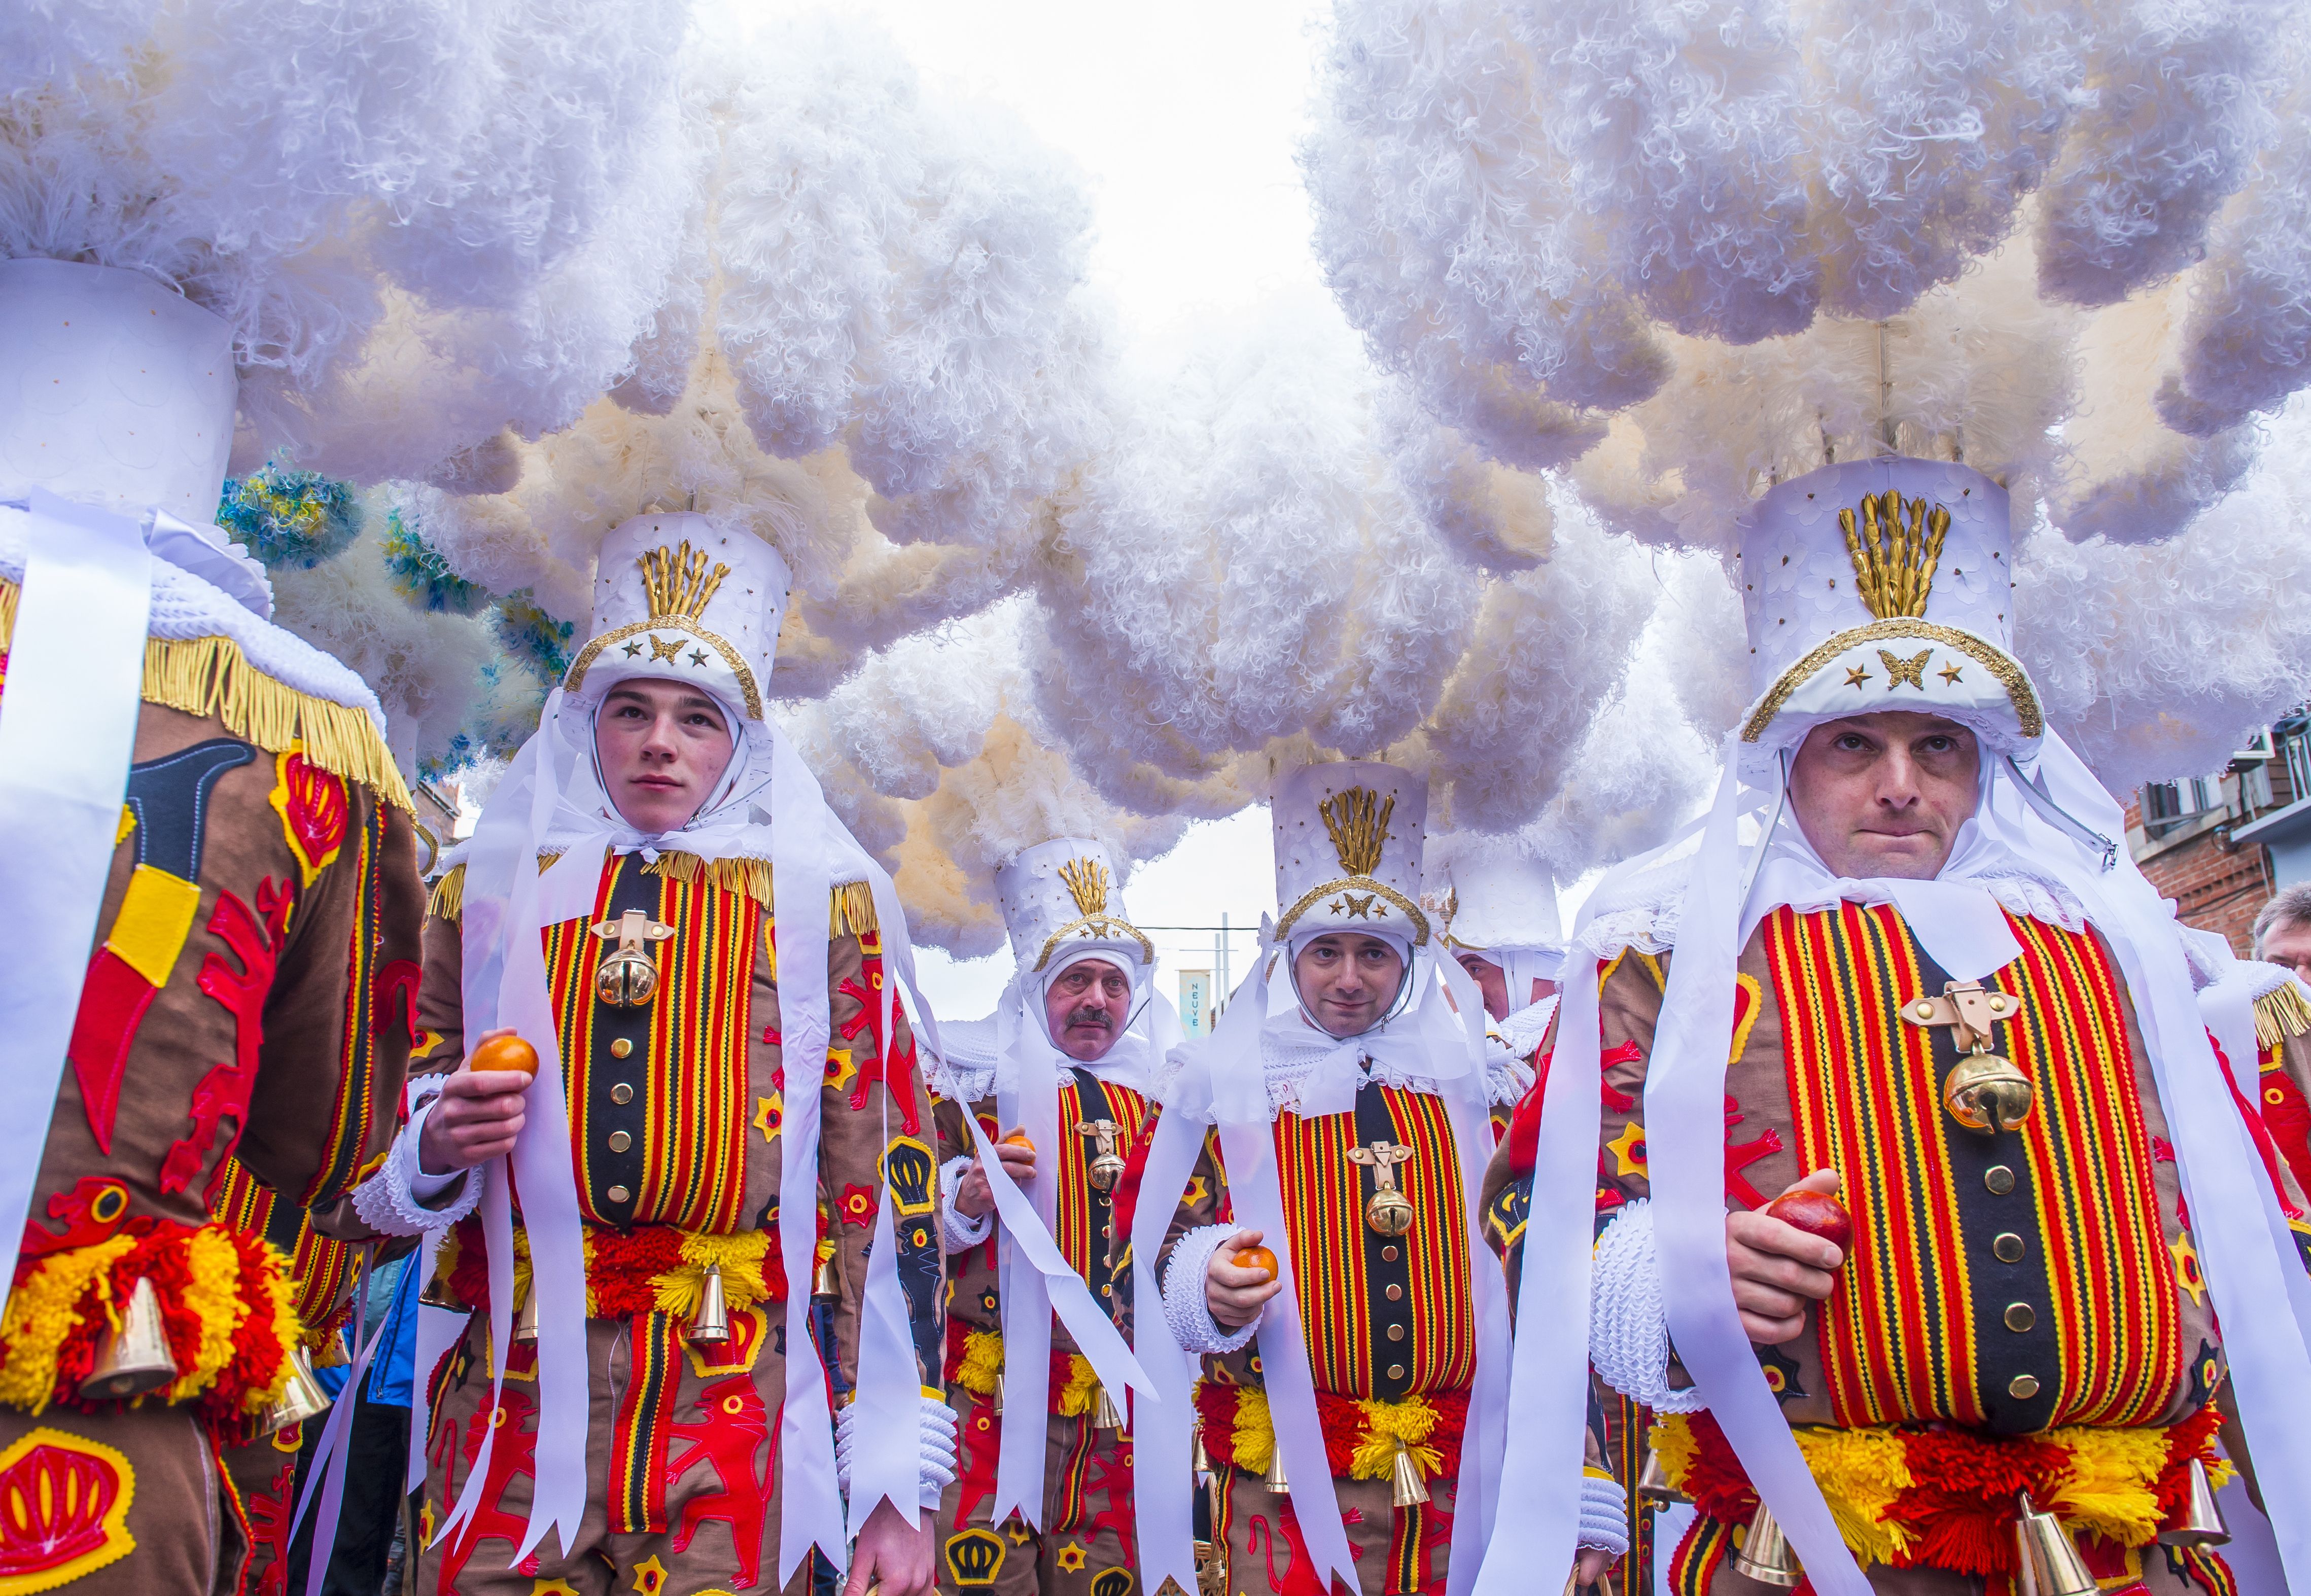 Participants in the Binche Carnival in Binche, Belgium